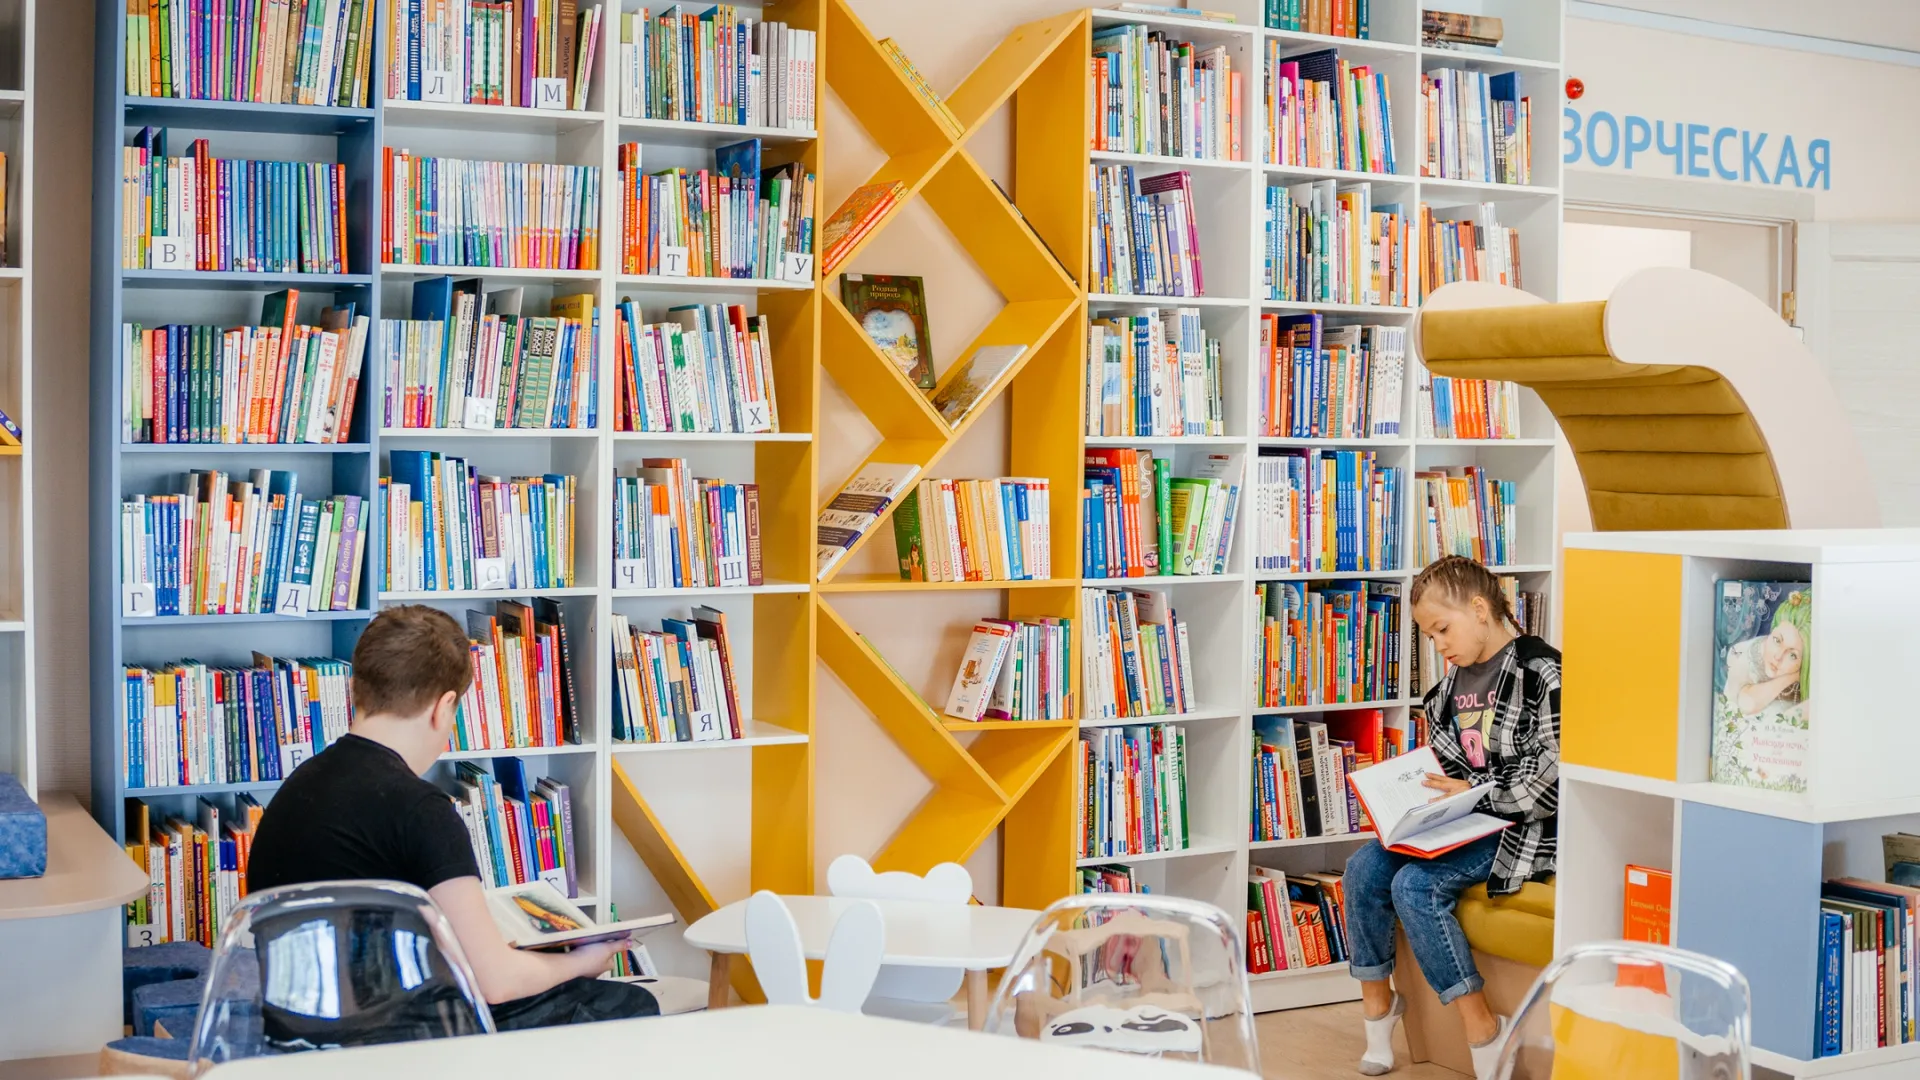 Библиотека в Харпе после глобальной модернизации приняла первых посетителей. Фото: Юлия Чудинова / "Ямал-Медиа"